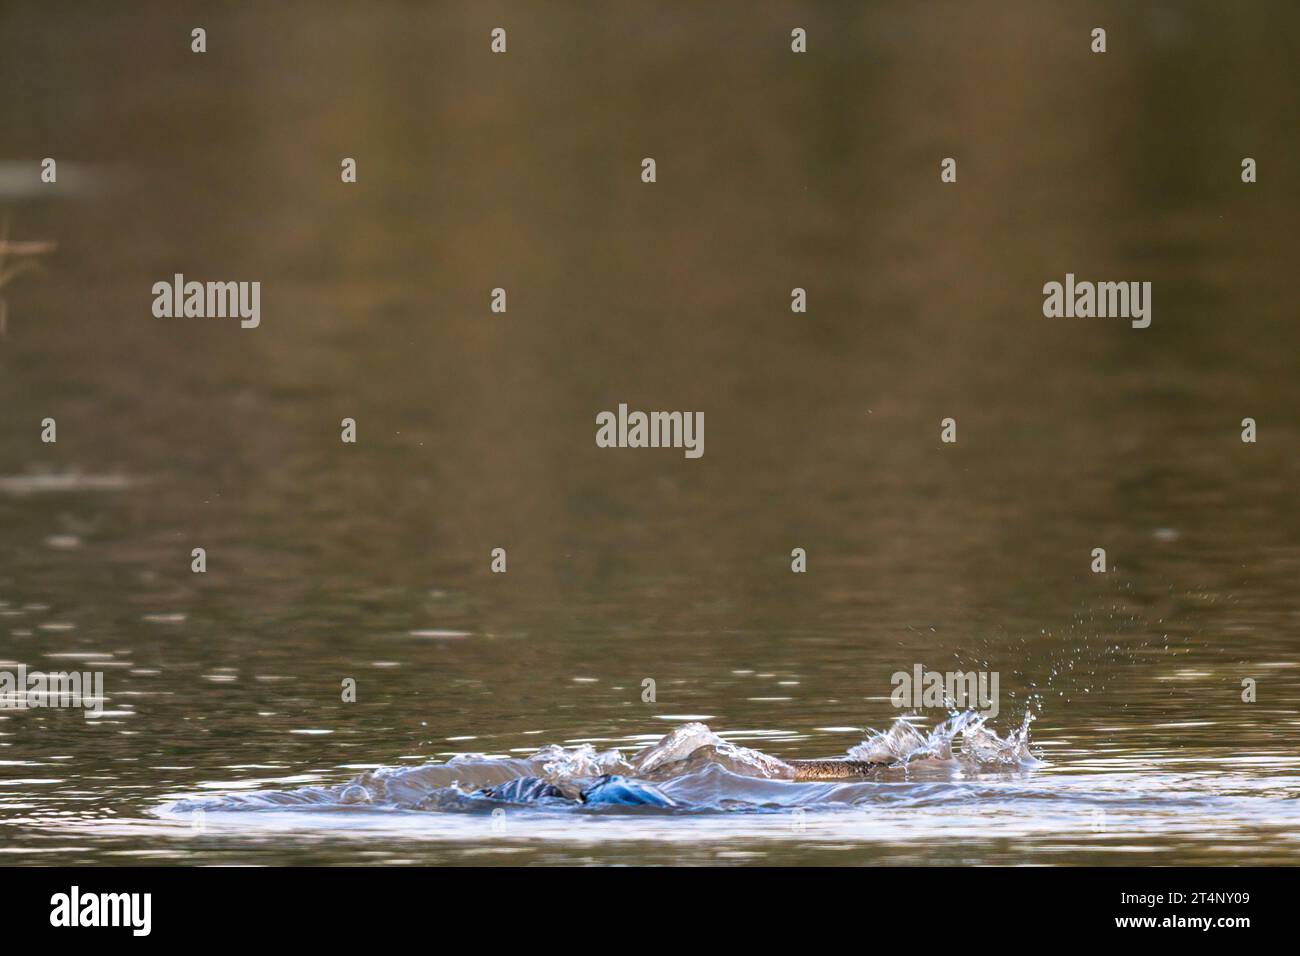 Der Darter floppt unter dem Wasser in der Niederlage CHANDIGARH, INDIEN AMÜSANTE Bilder zeigen einen Darter Vogel, der sein Abendessen nur für in die Luft wirft Stockfoto